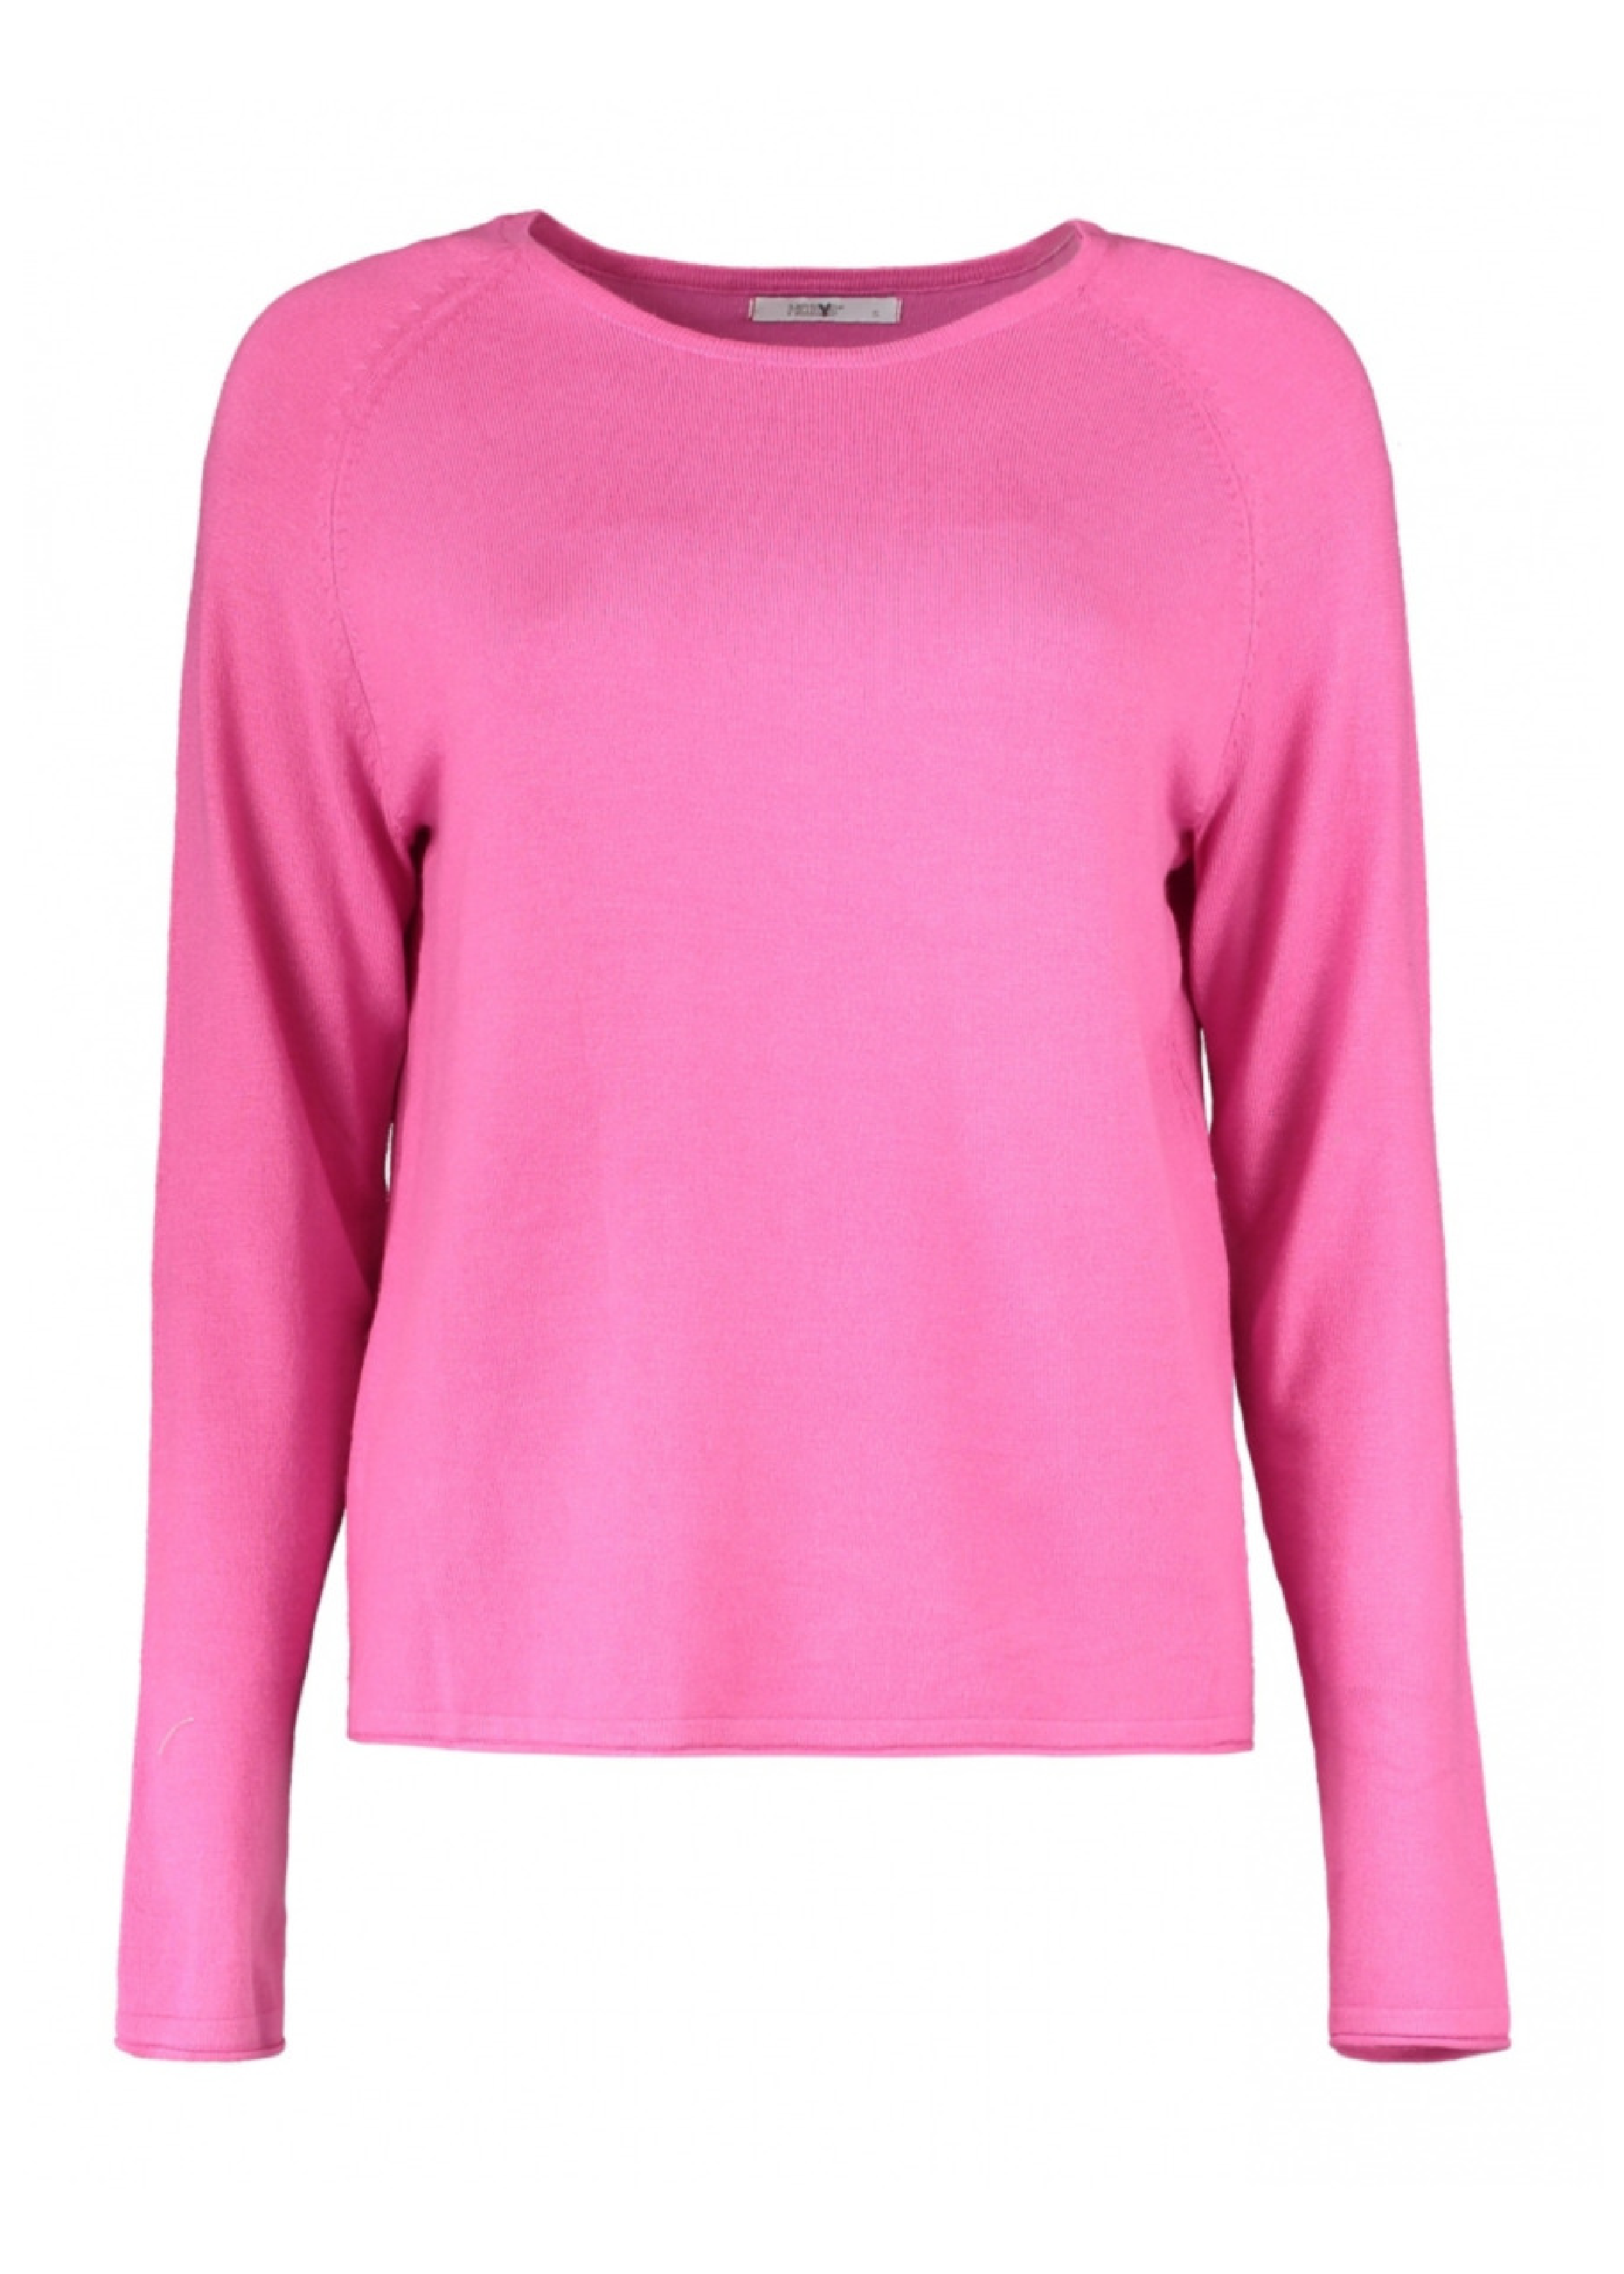 Marin Summer Pink Knit Top